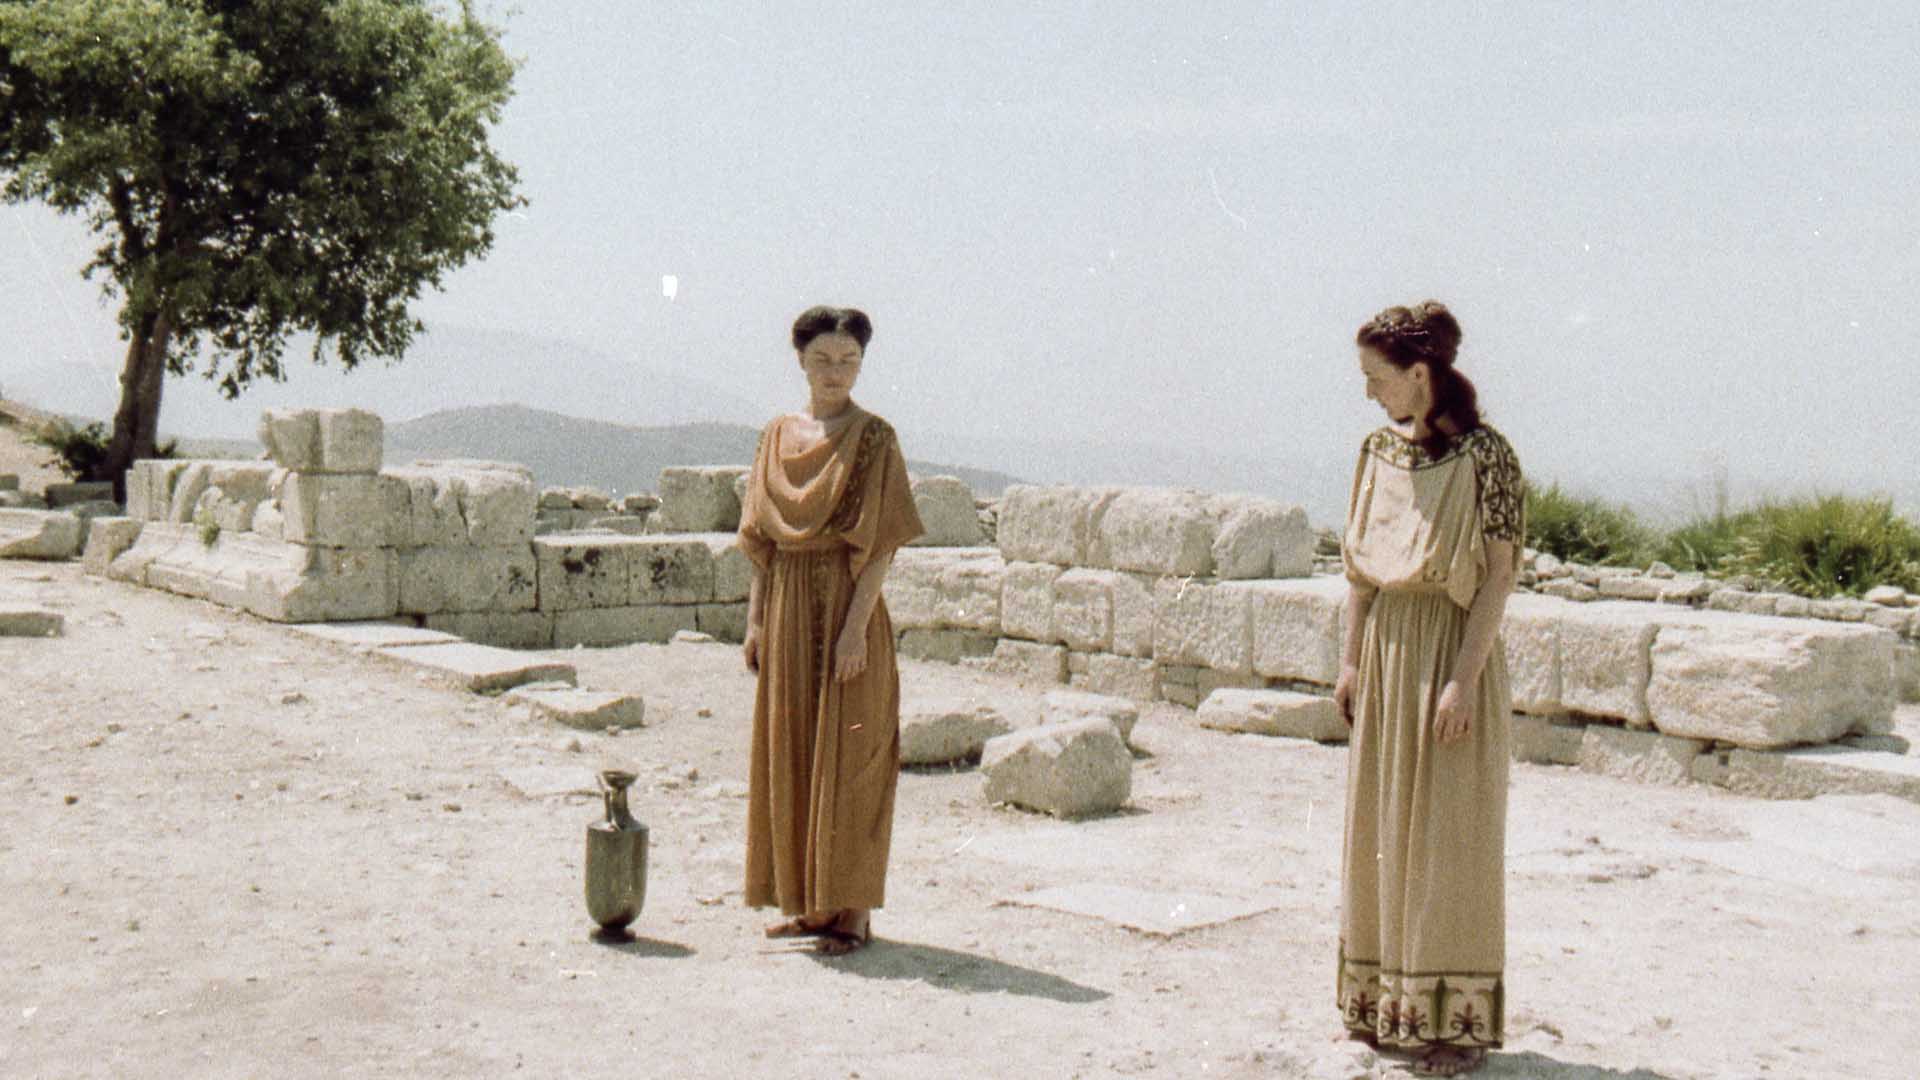 Filmstill aus Antigone. Zwei Frauen stehen in beigen Kleidern nebeneinander und schauen sich an. Die Umgebung zeigt eine niedrige Steinmauer, einen Baum und sandigen Boden.